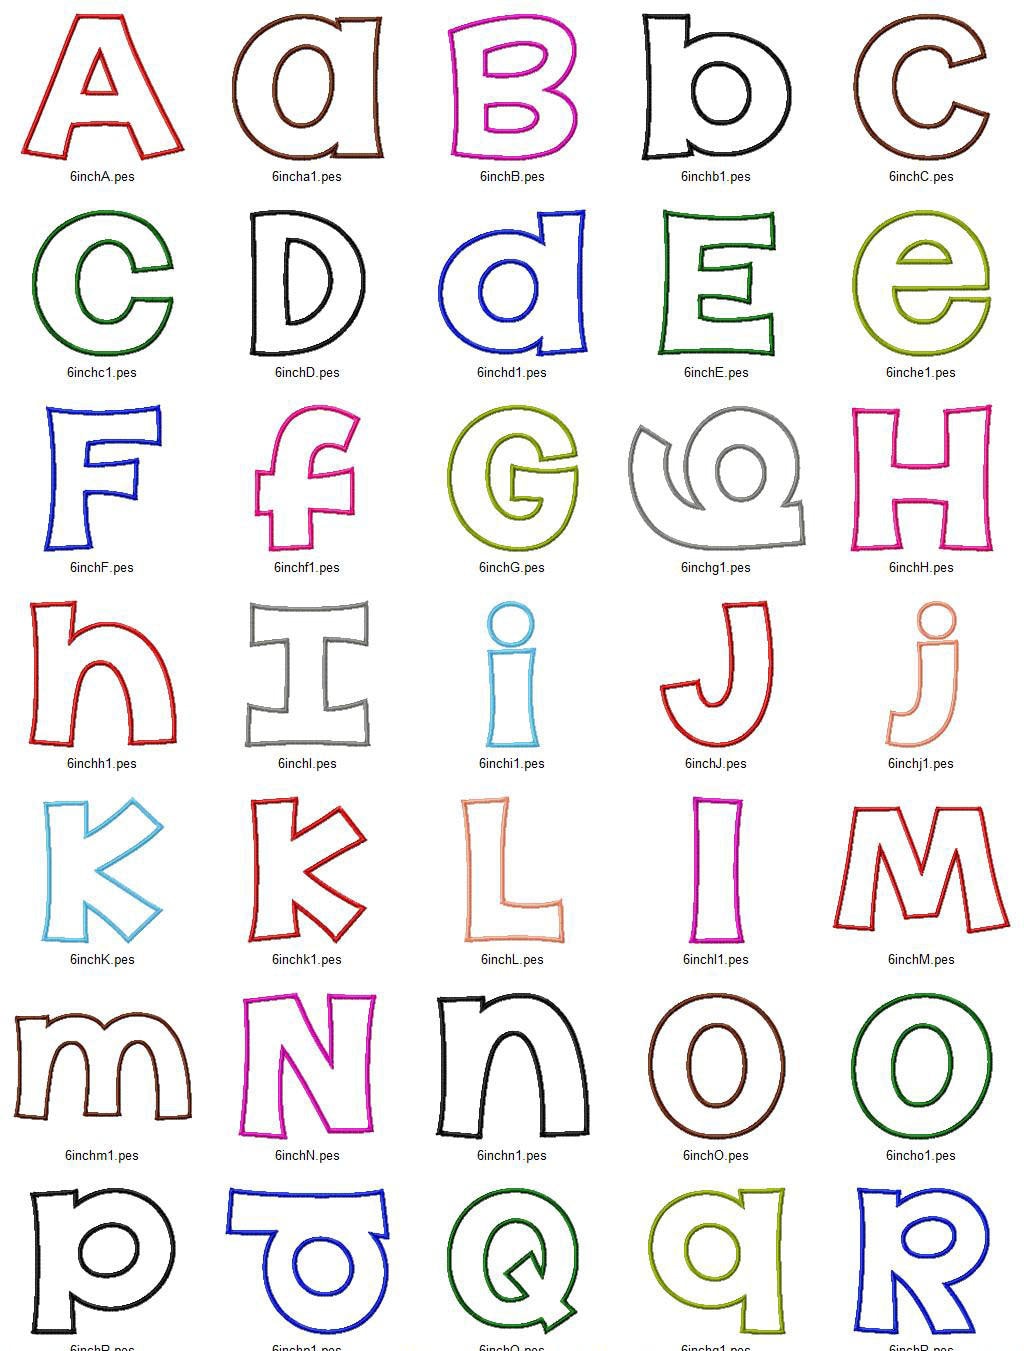 happy-applique-machine-embroidery-font-alphabet-4-sizes